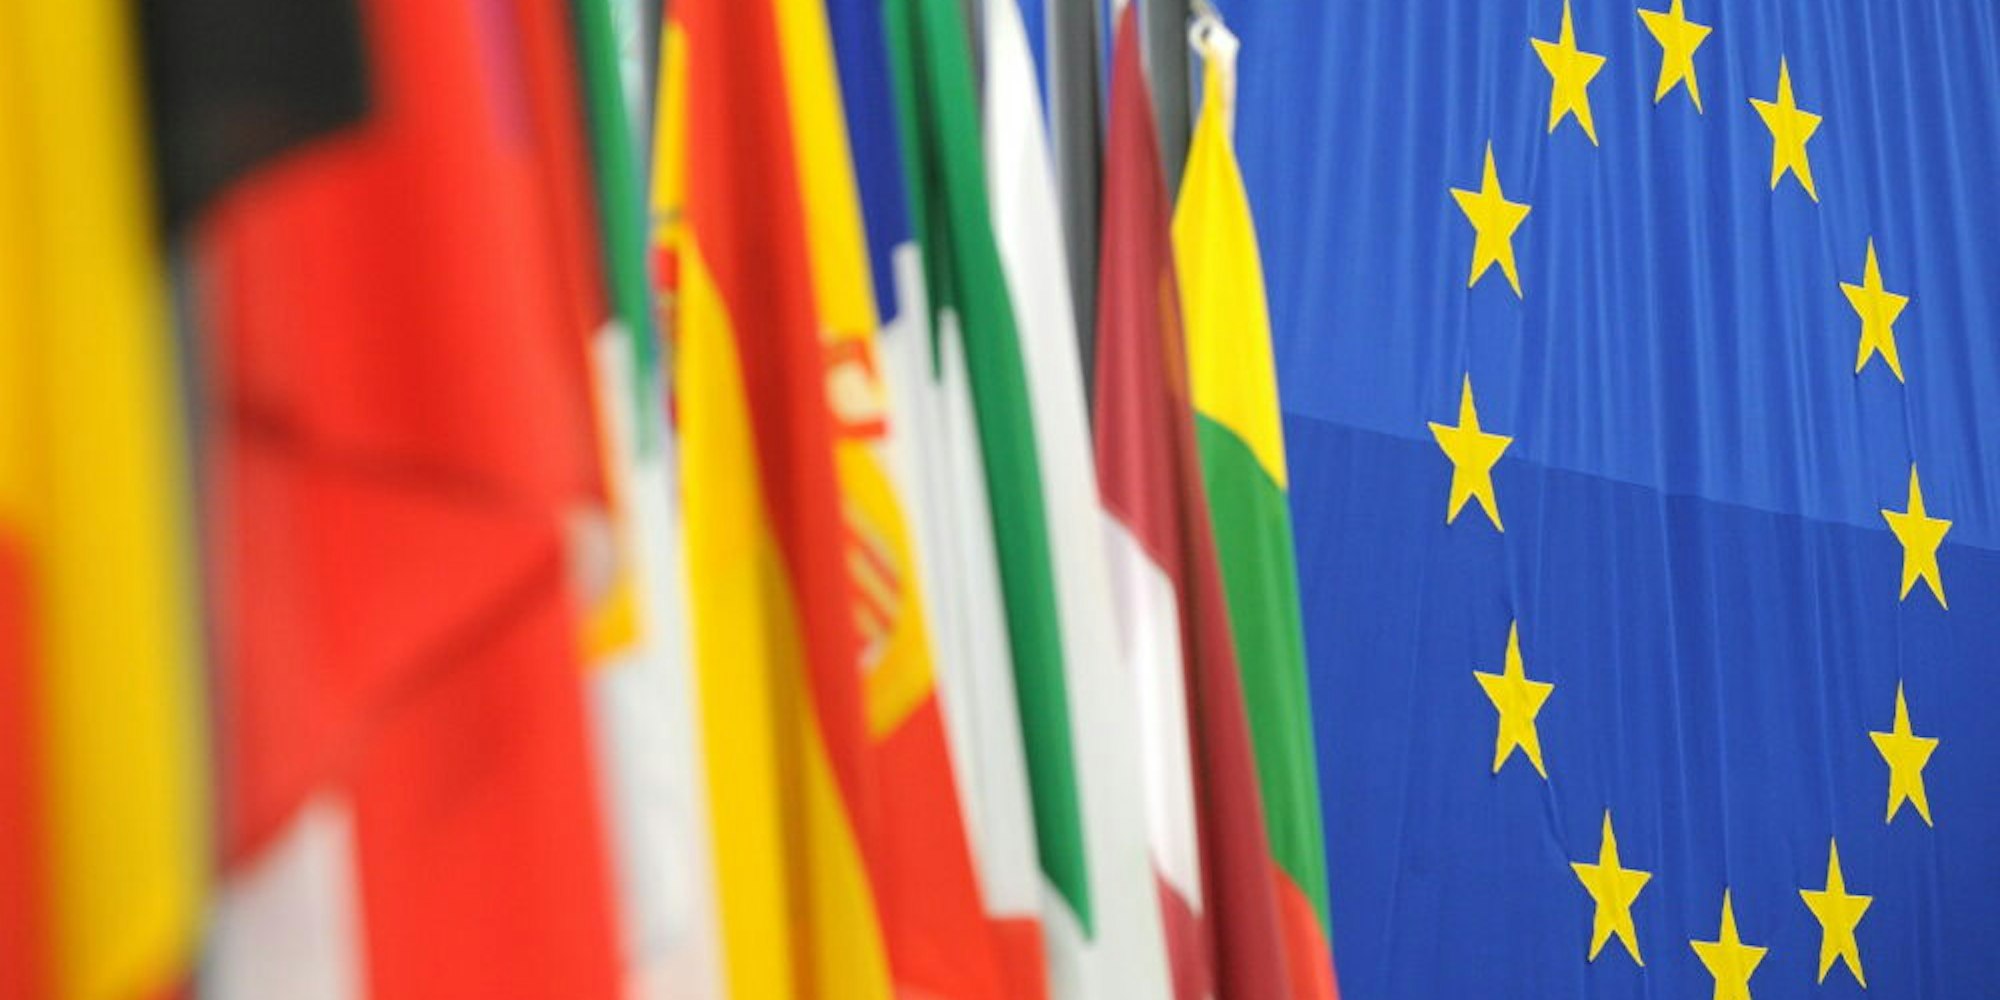 Flaggen der europäischen Mitgliedsstaaten im Europaparlament wehen in Straßburg